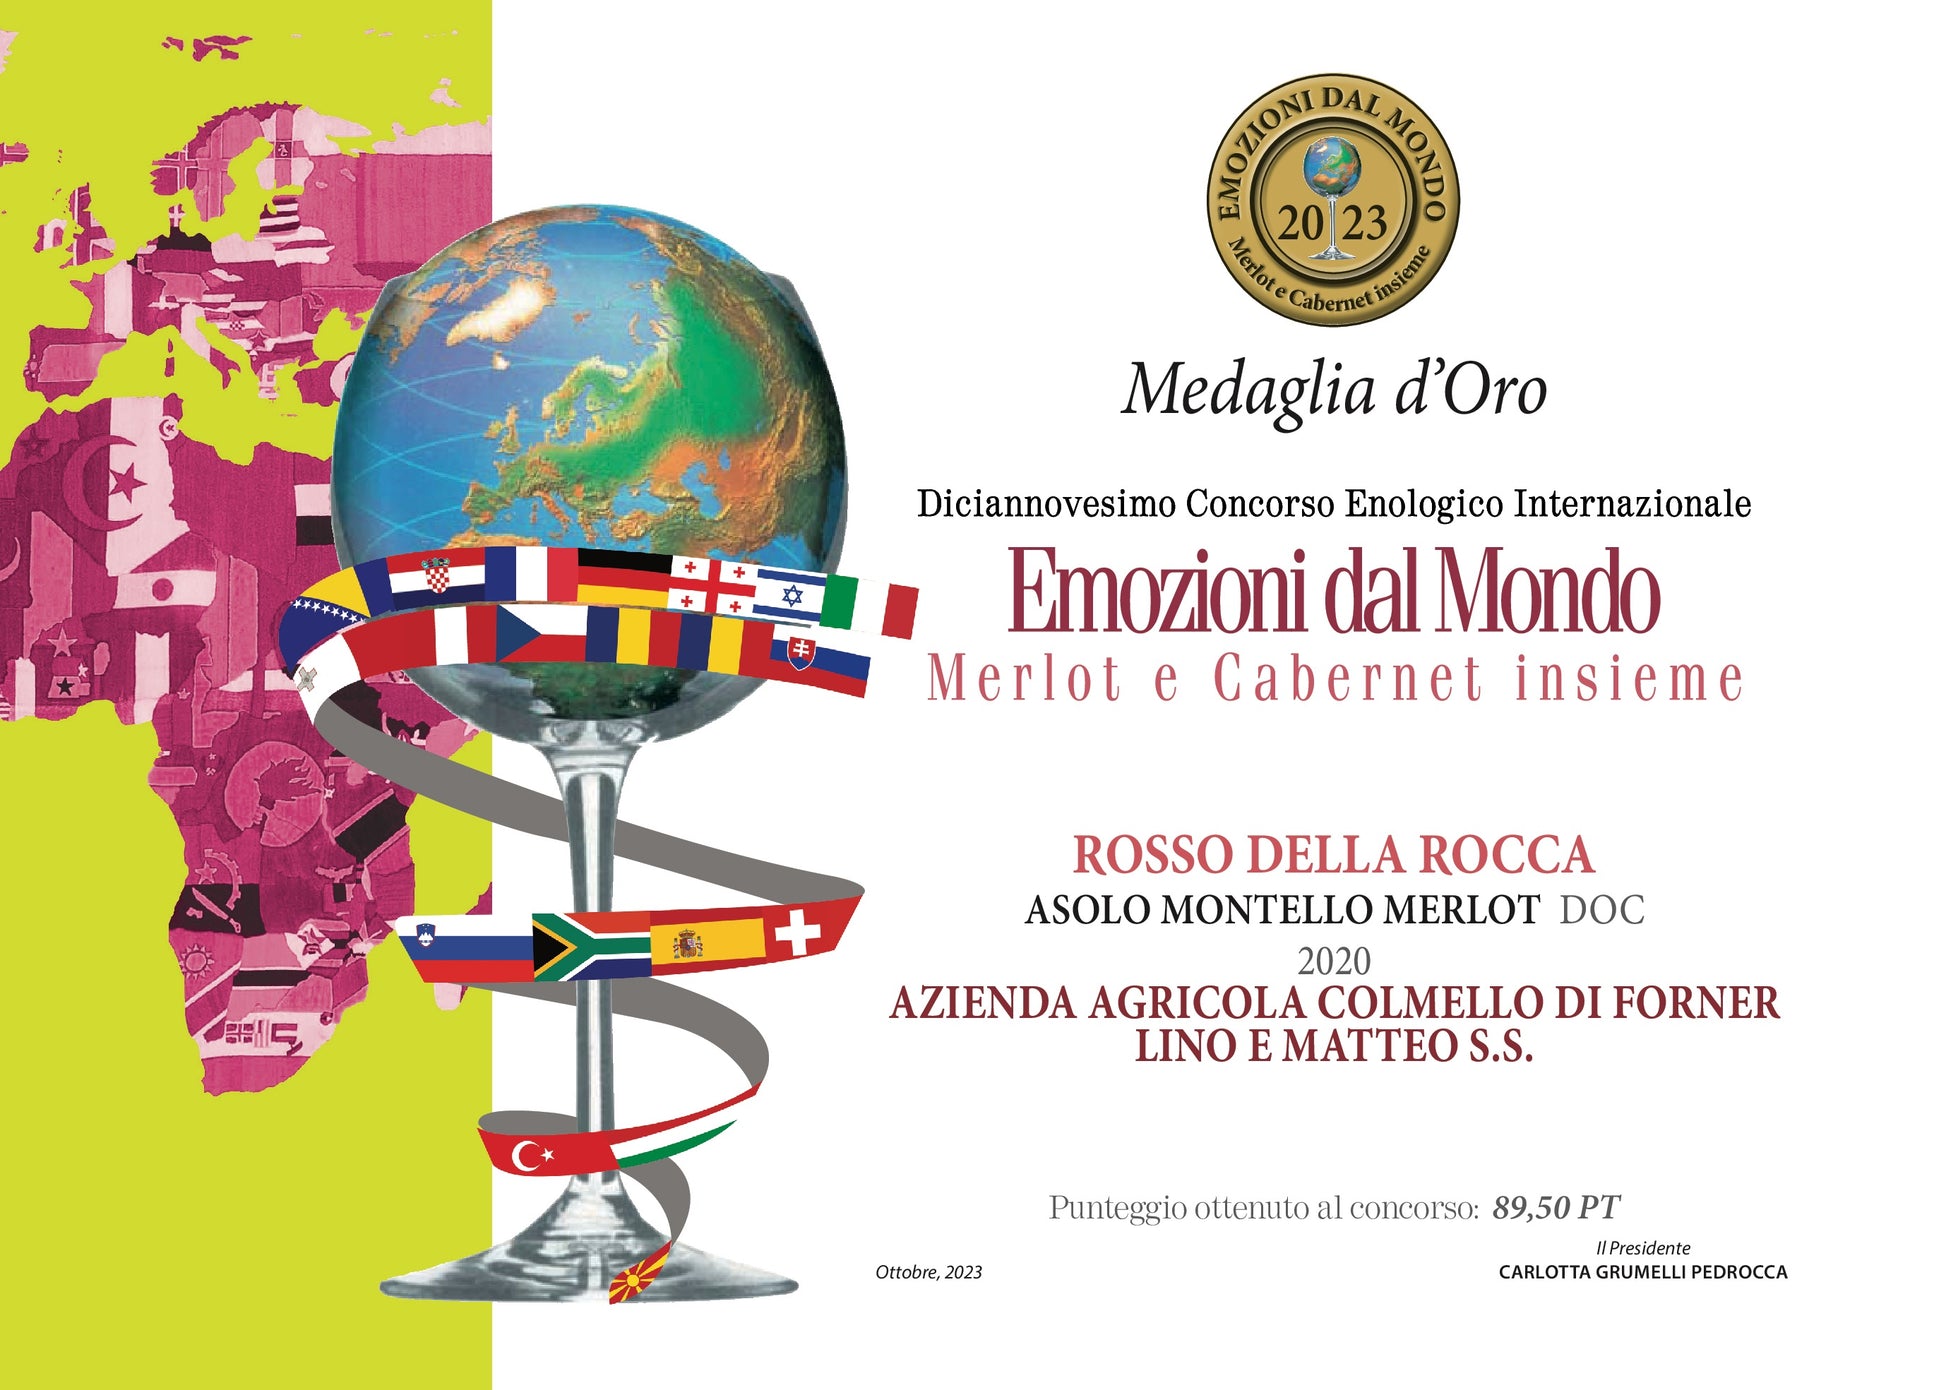 Asolo Montello Rosso della Rocca Merlot DOC annata 2020  -  Pat del Colmel - vaigustando